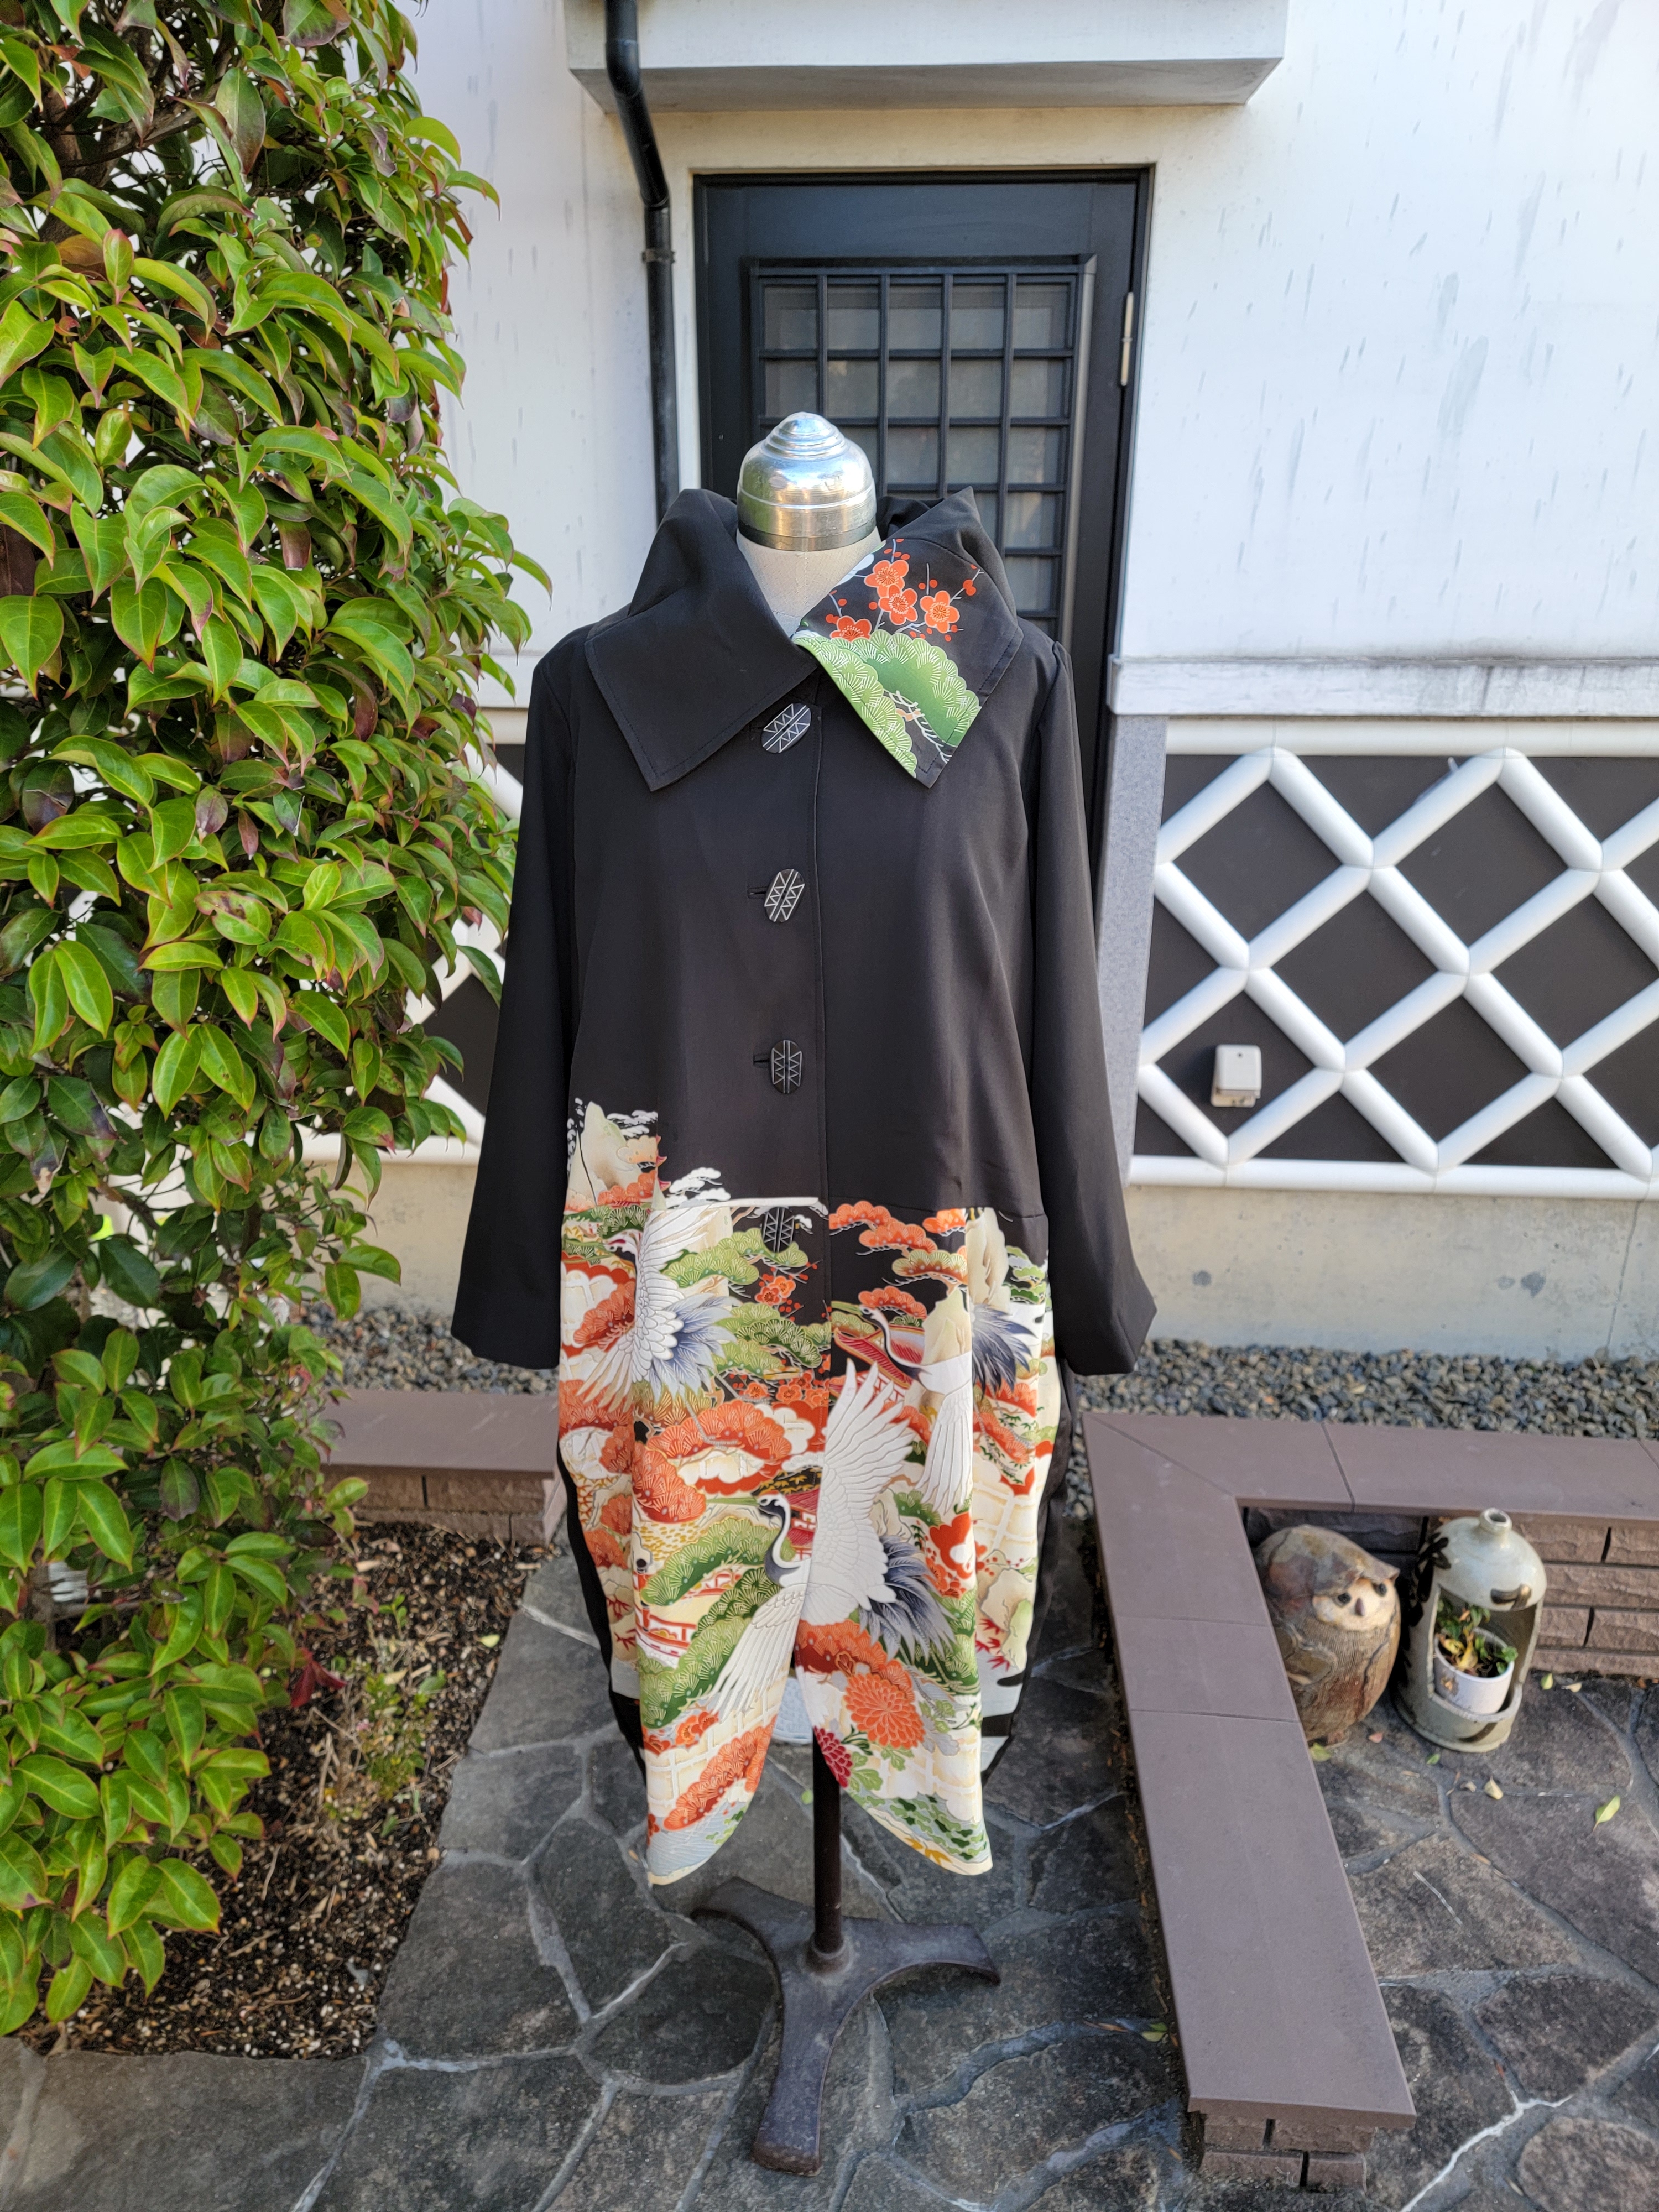 SISE kimonoコート 15ss ブラック | angeloawards.com